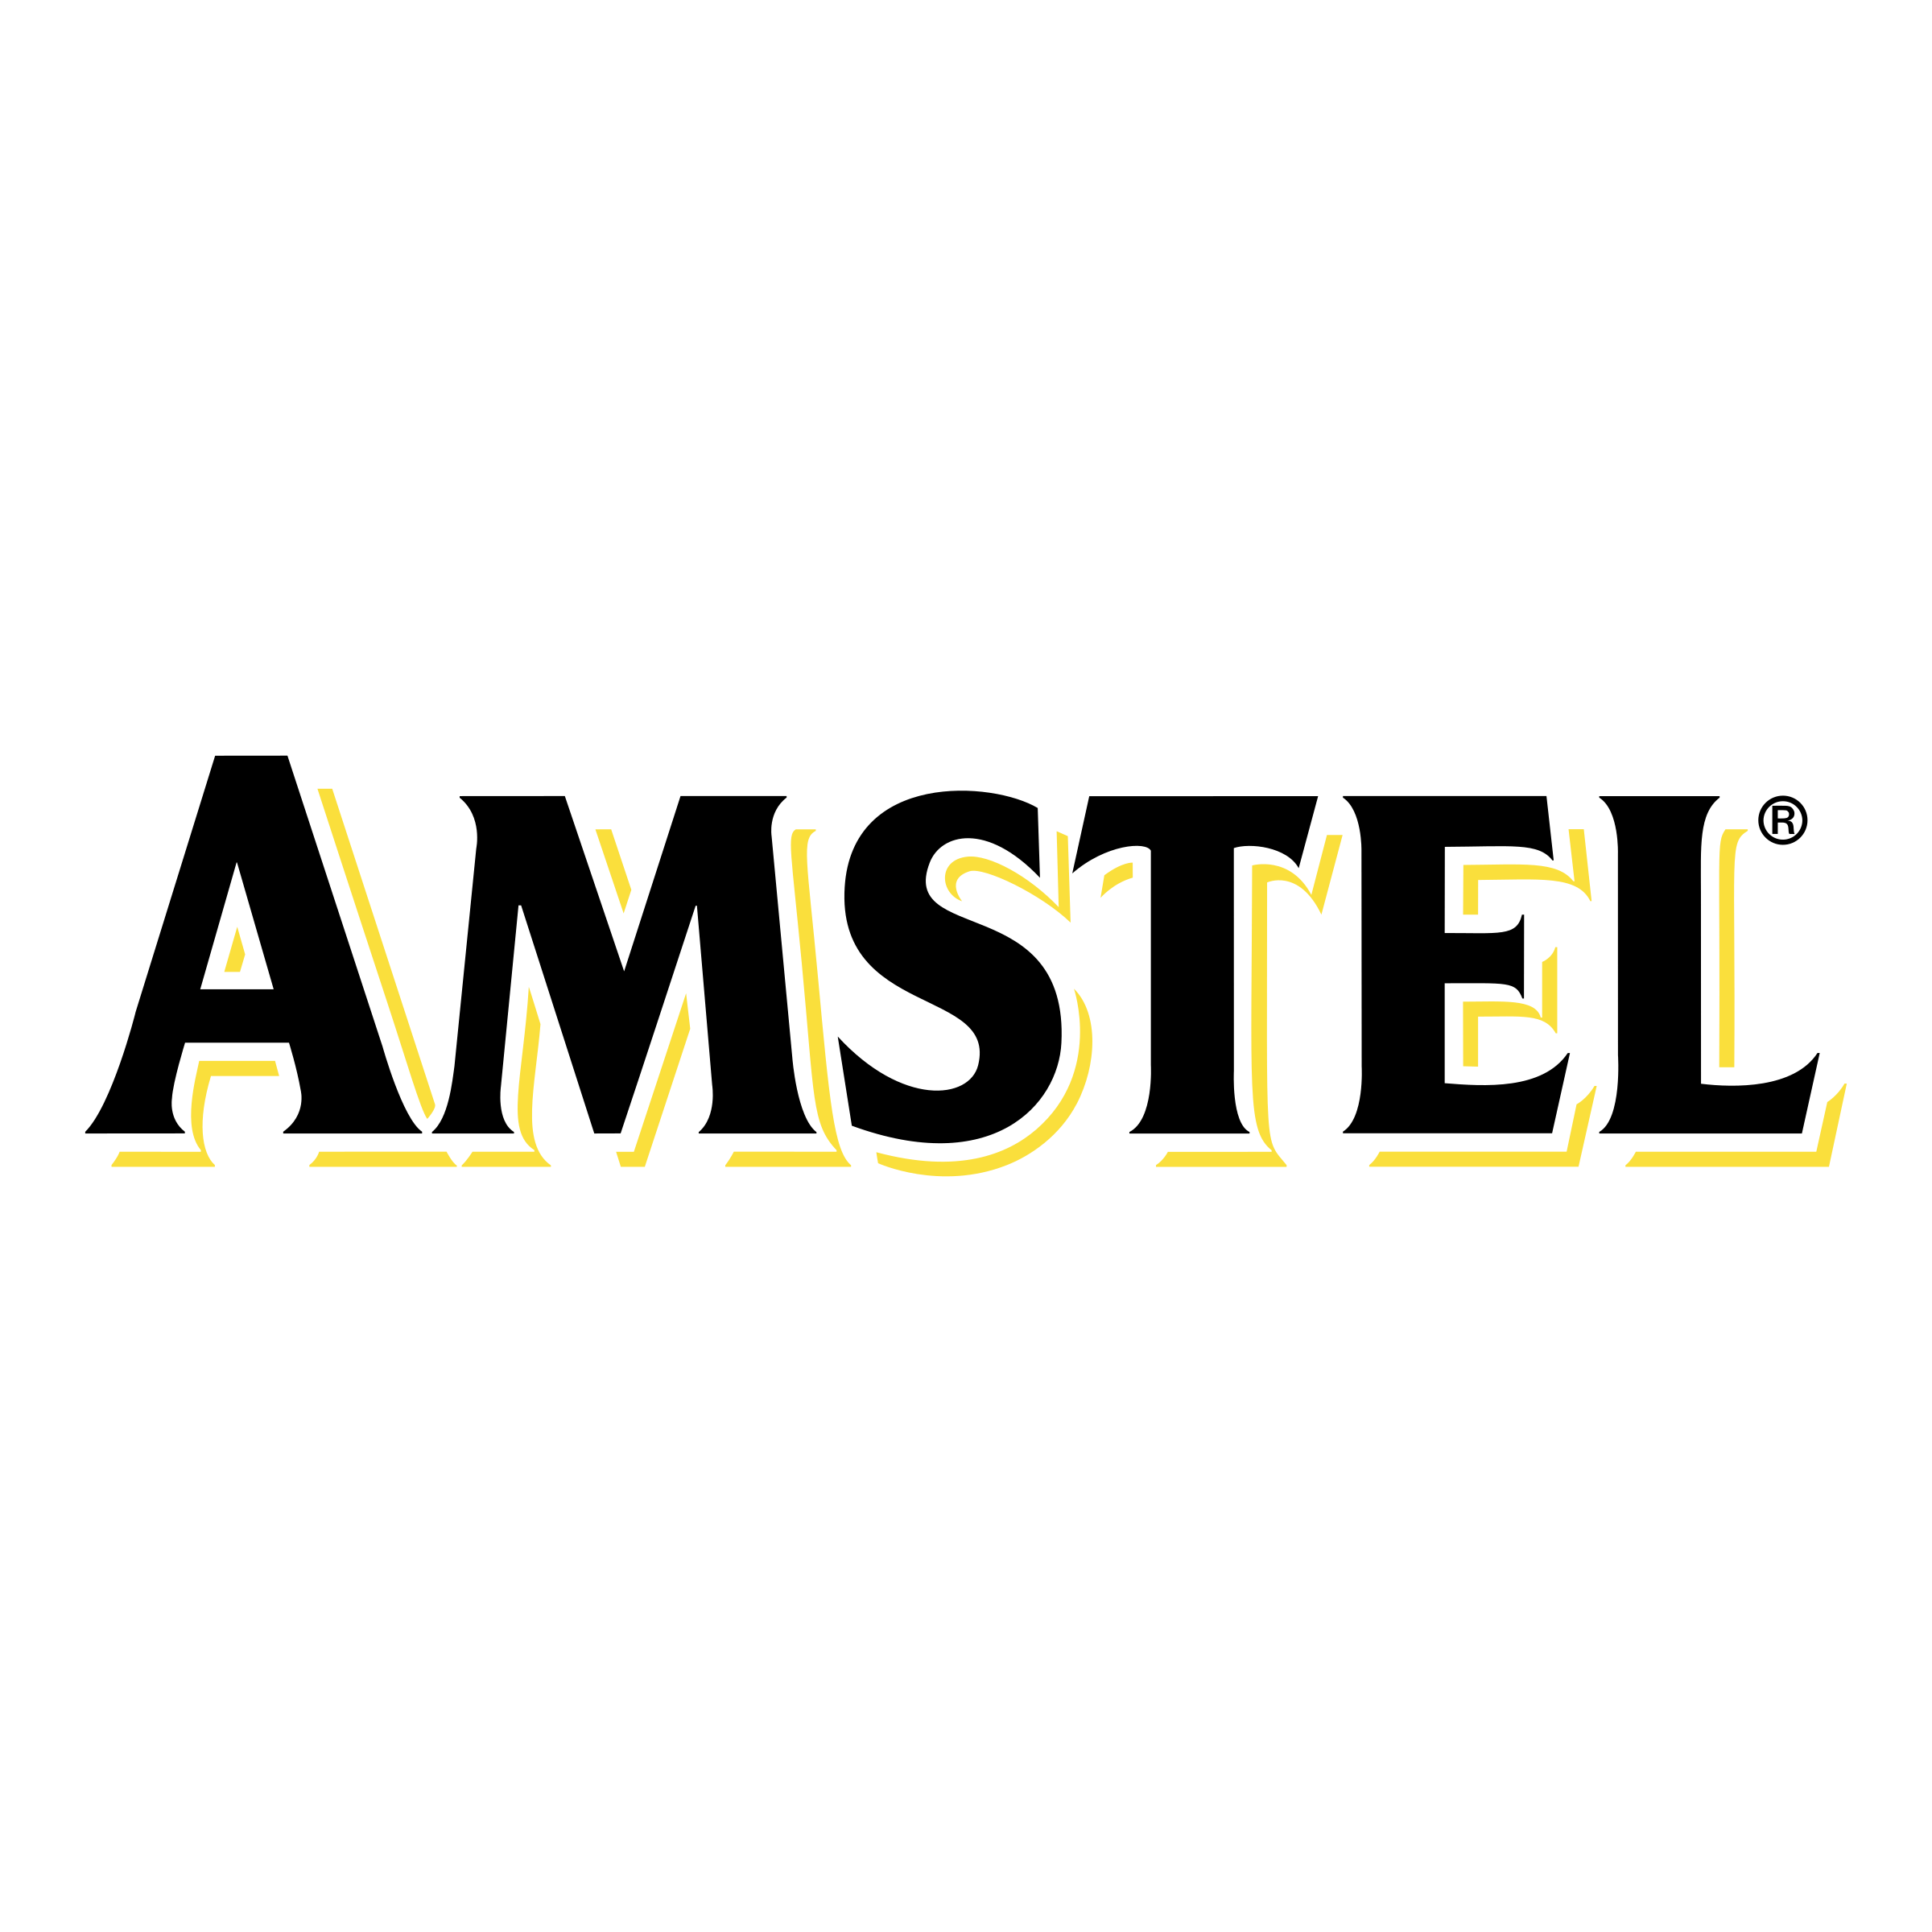 Amstel Logo - Amstel Logo PNG Transparent & SVG Vector - Freebie Supply